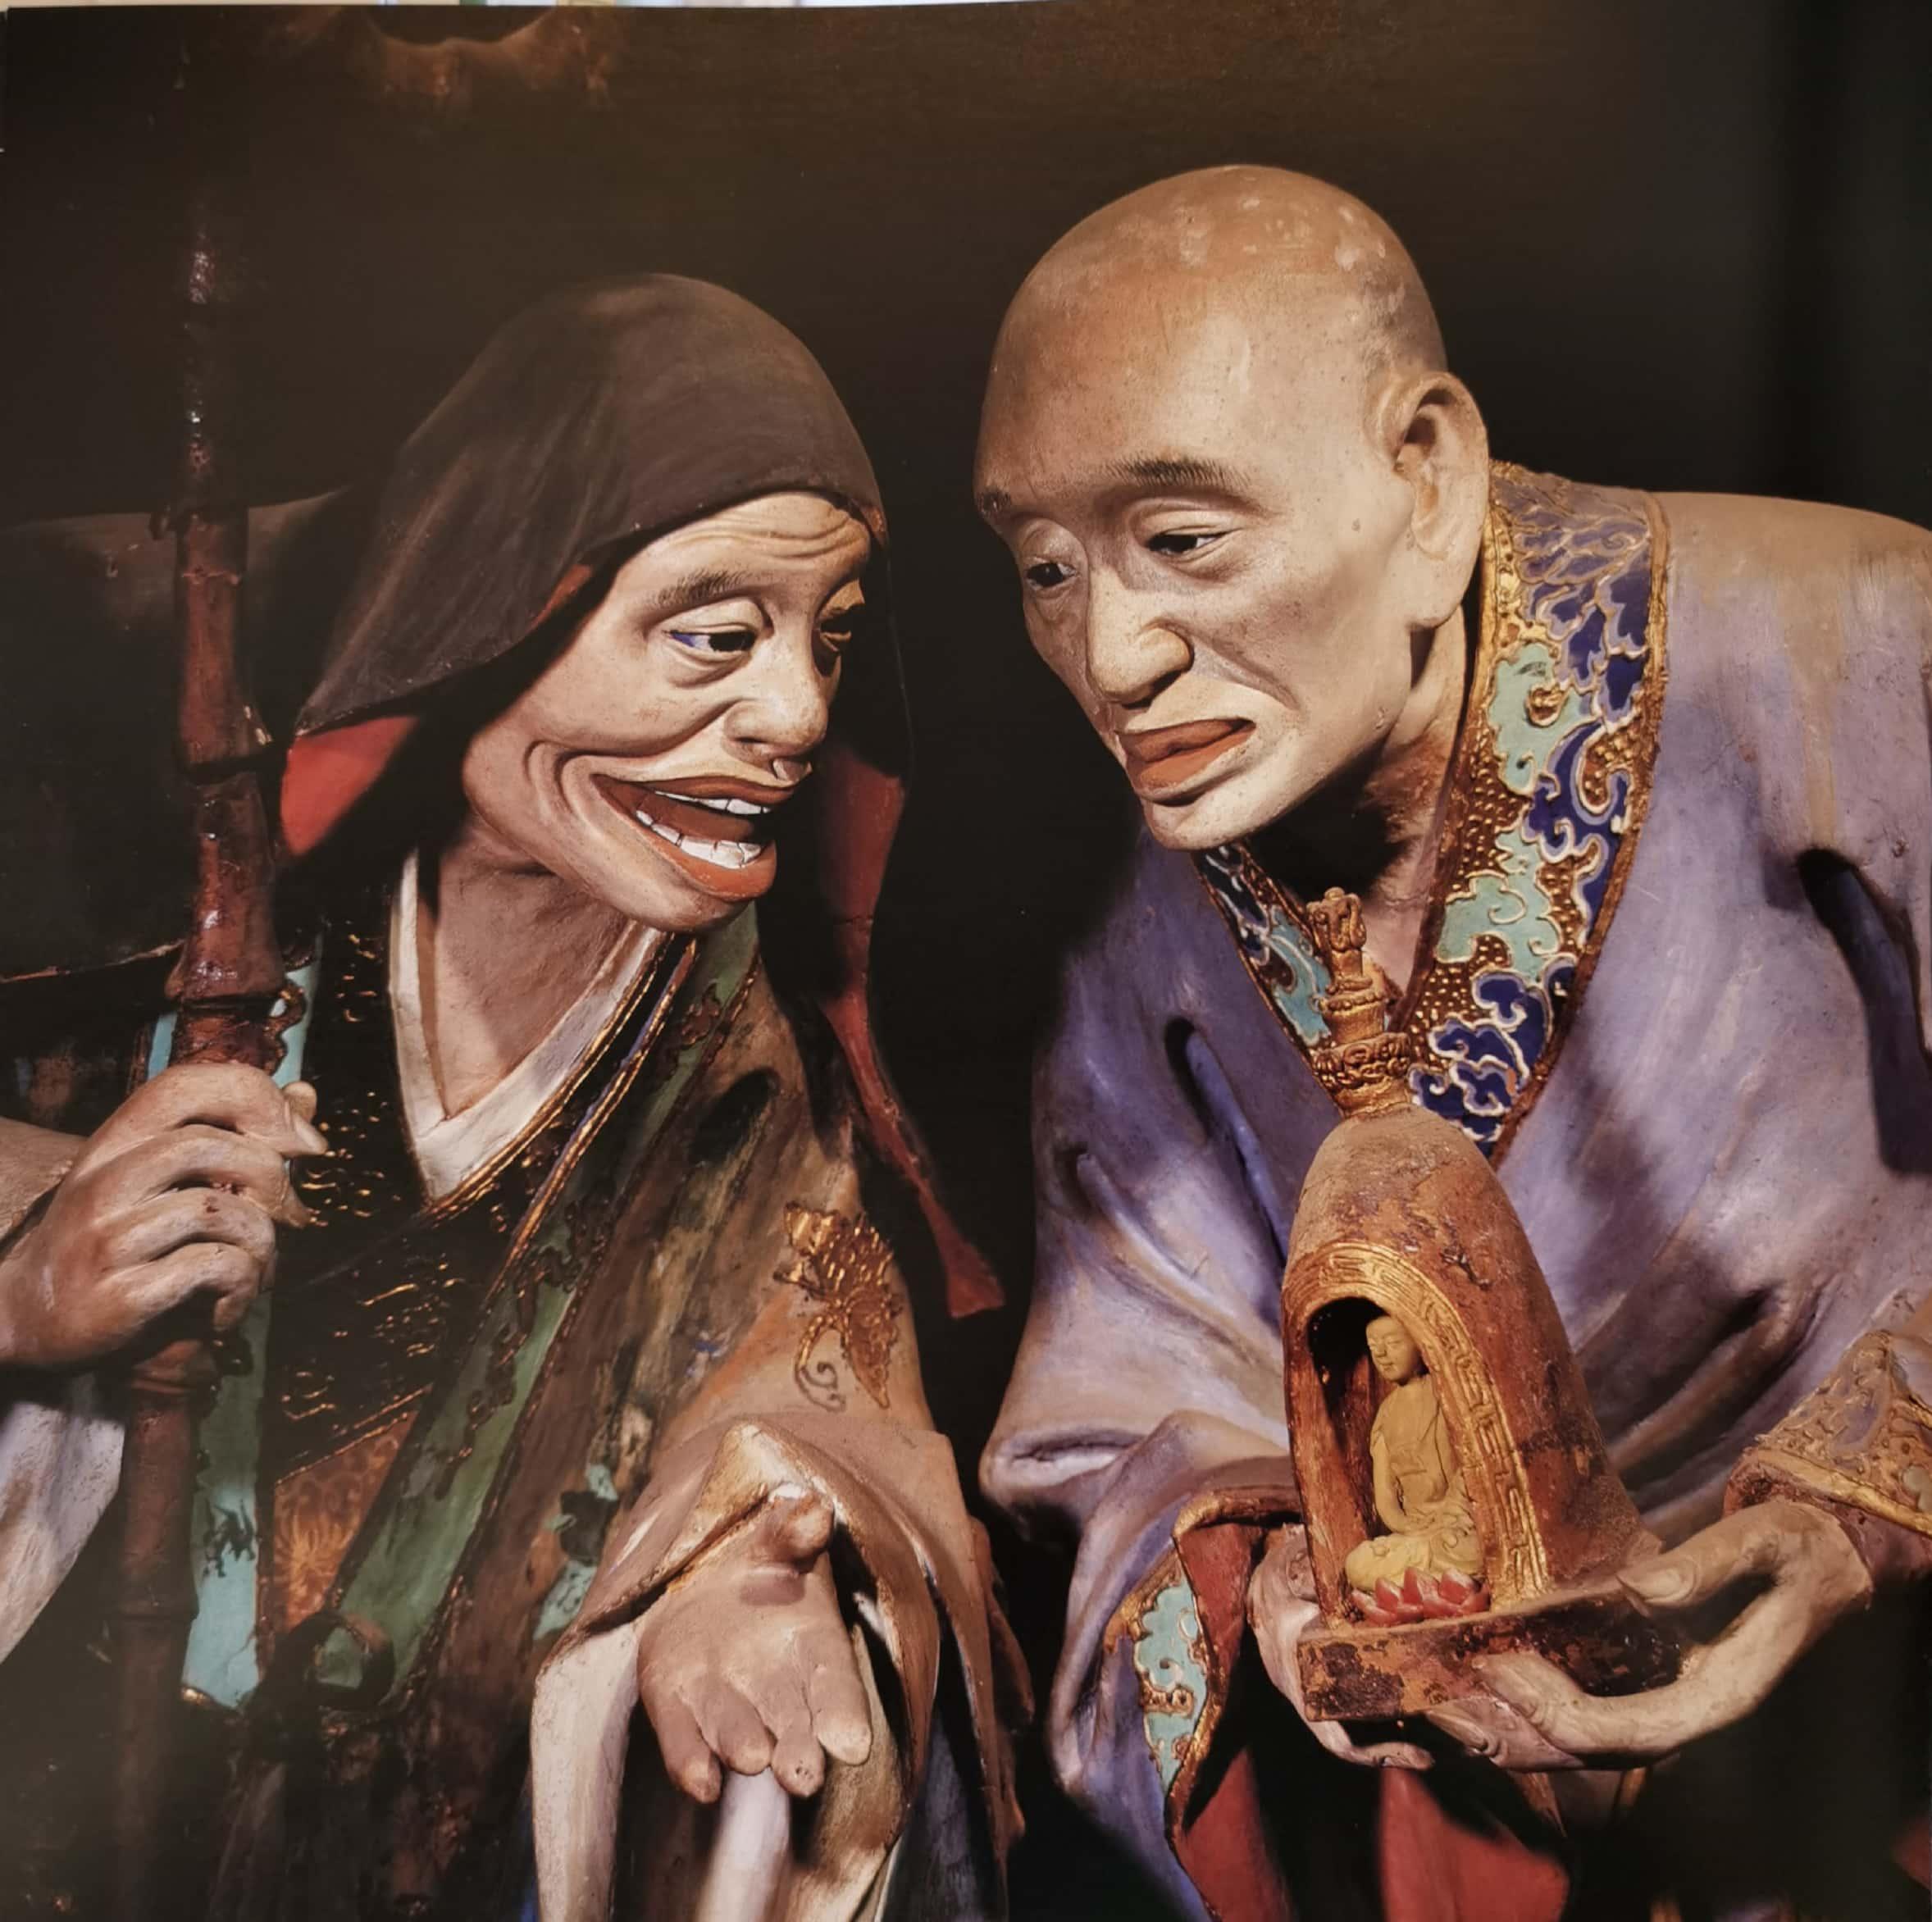 昆明筇竹寺五百罗汉被誉为「东方雕塑艺术宝库中一颗璀璨的明珠」,其